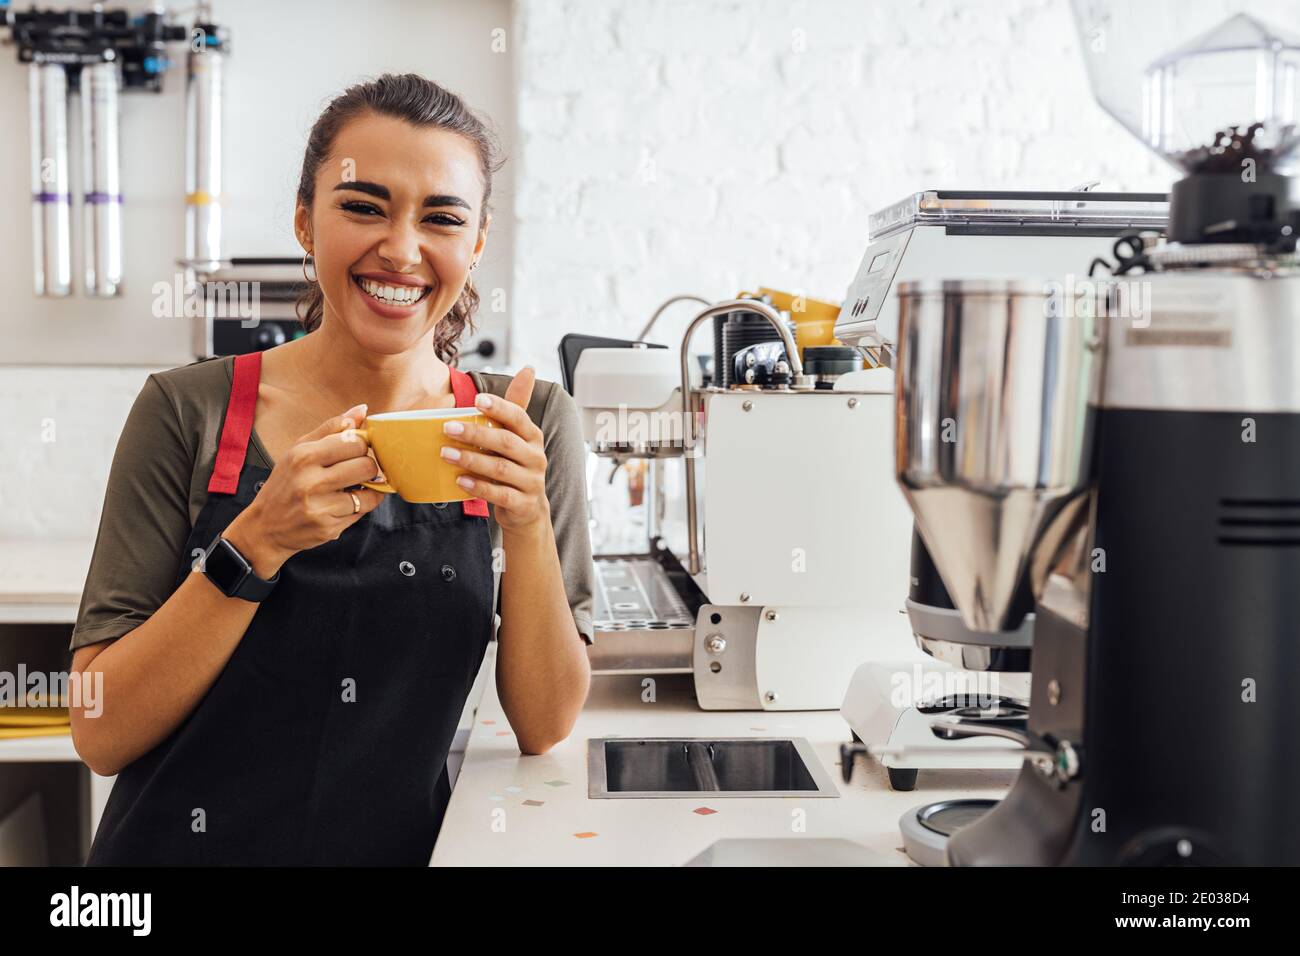 Lachender Kaffeehausbesitzer, der an der Theke steht und einen Becher hält. Glückliche Frau in Schürze Blick auf Kamera im Café. Stockfoto